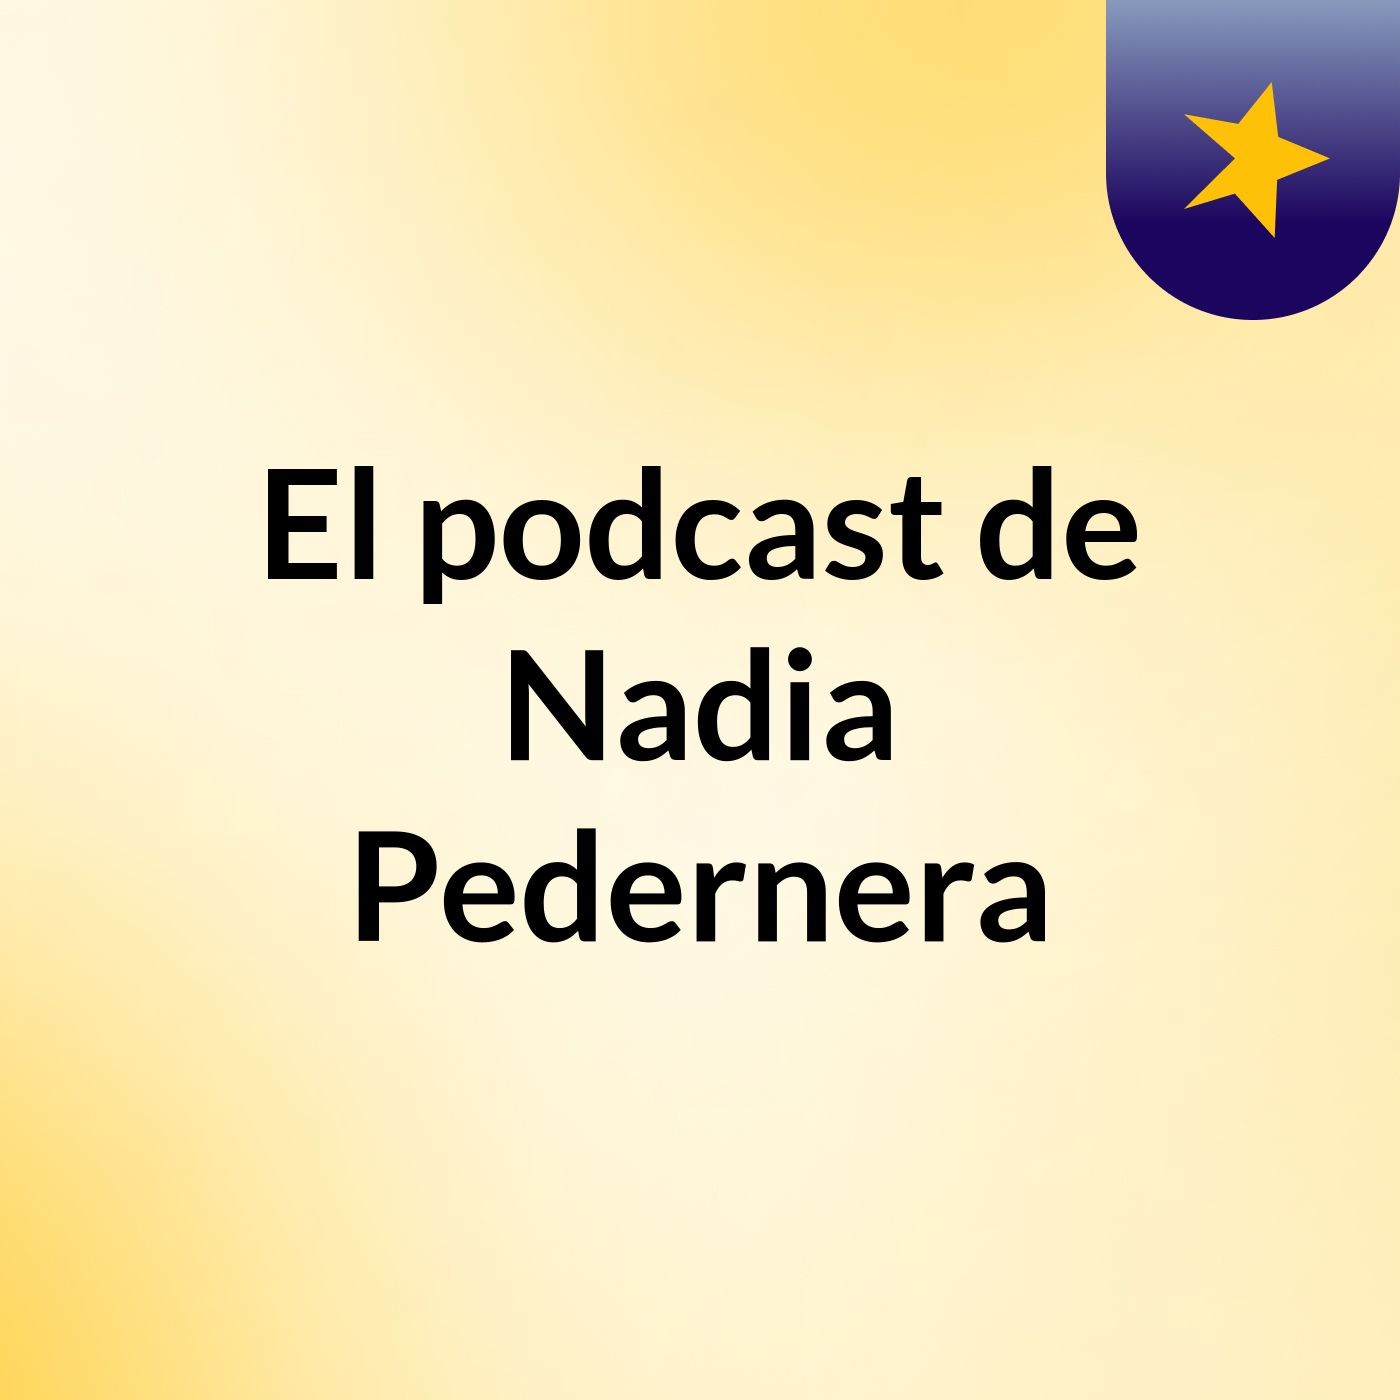 Episodio 4 - El podcast de Nadia Pedernera